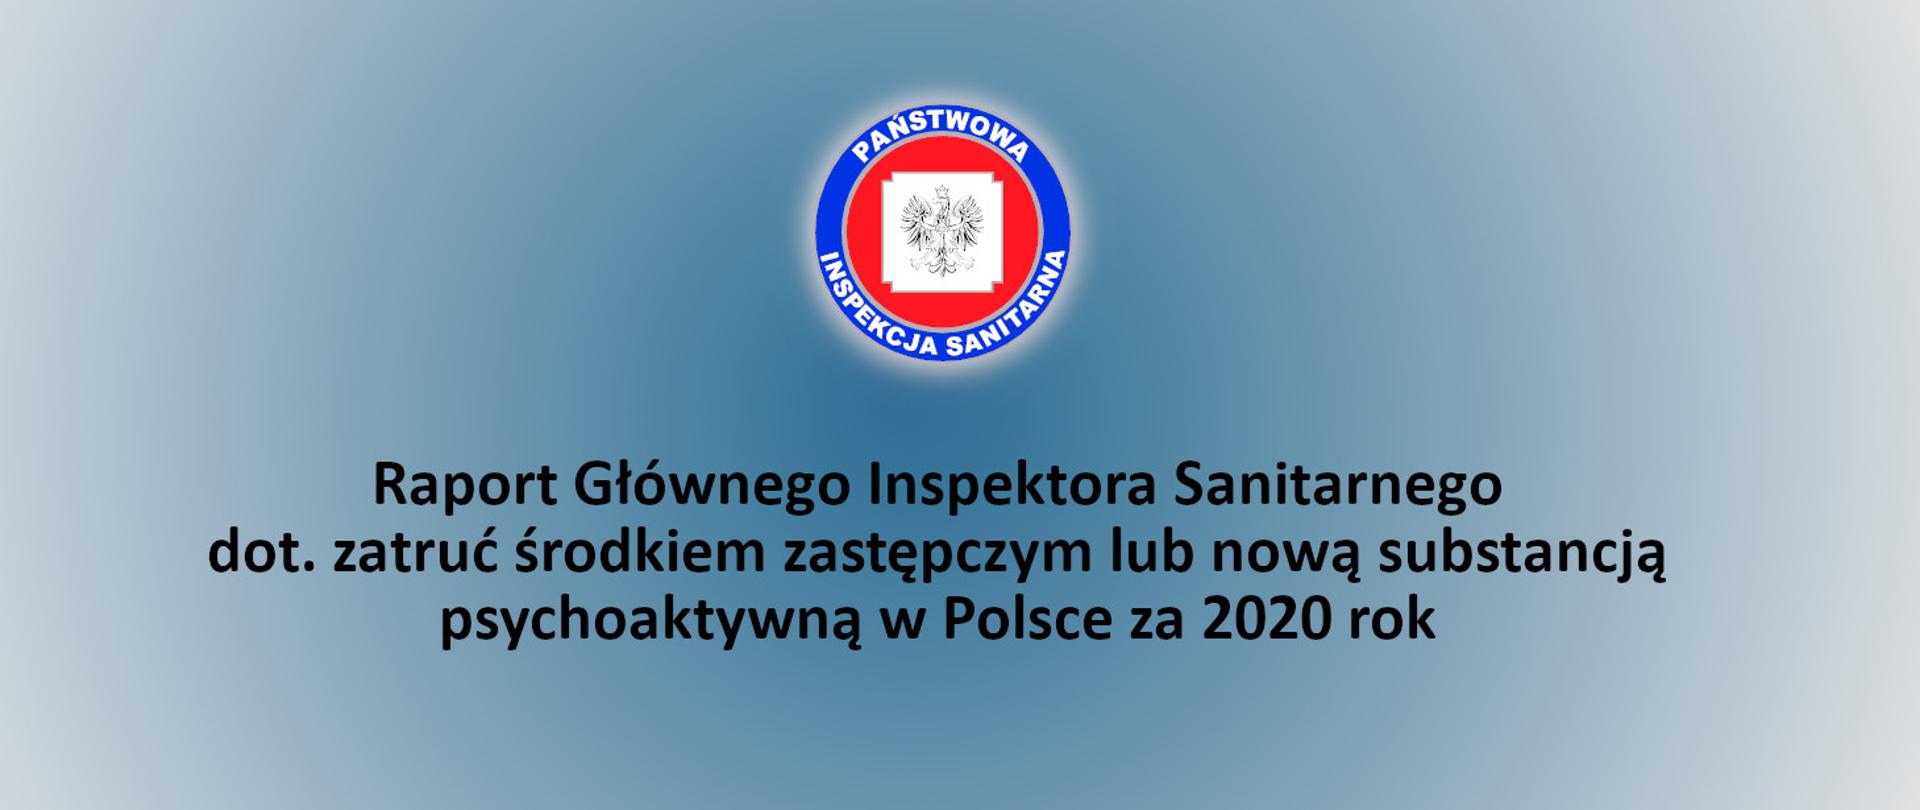 Na zdjęciu logo Państwowej Inspekcji Sanitarnej, poniżej napis: Raport Głównego Inspektora Sanitarnego dot. zatruć środkiem zastępczym lub nową substancją psychoaktywną w Polsce za 2020 rok